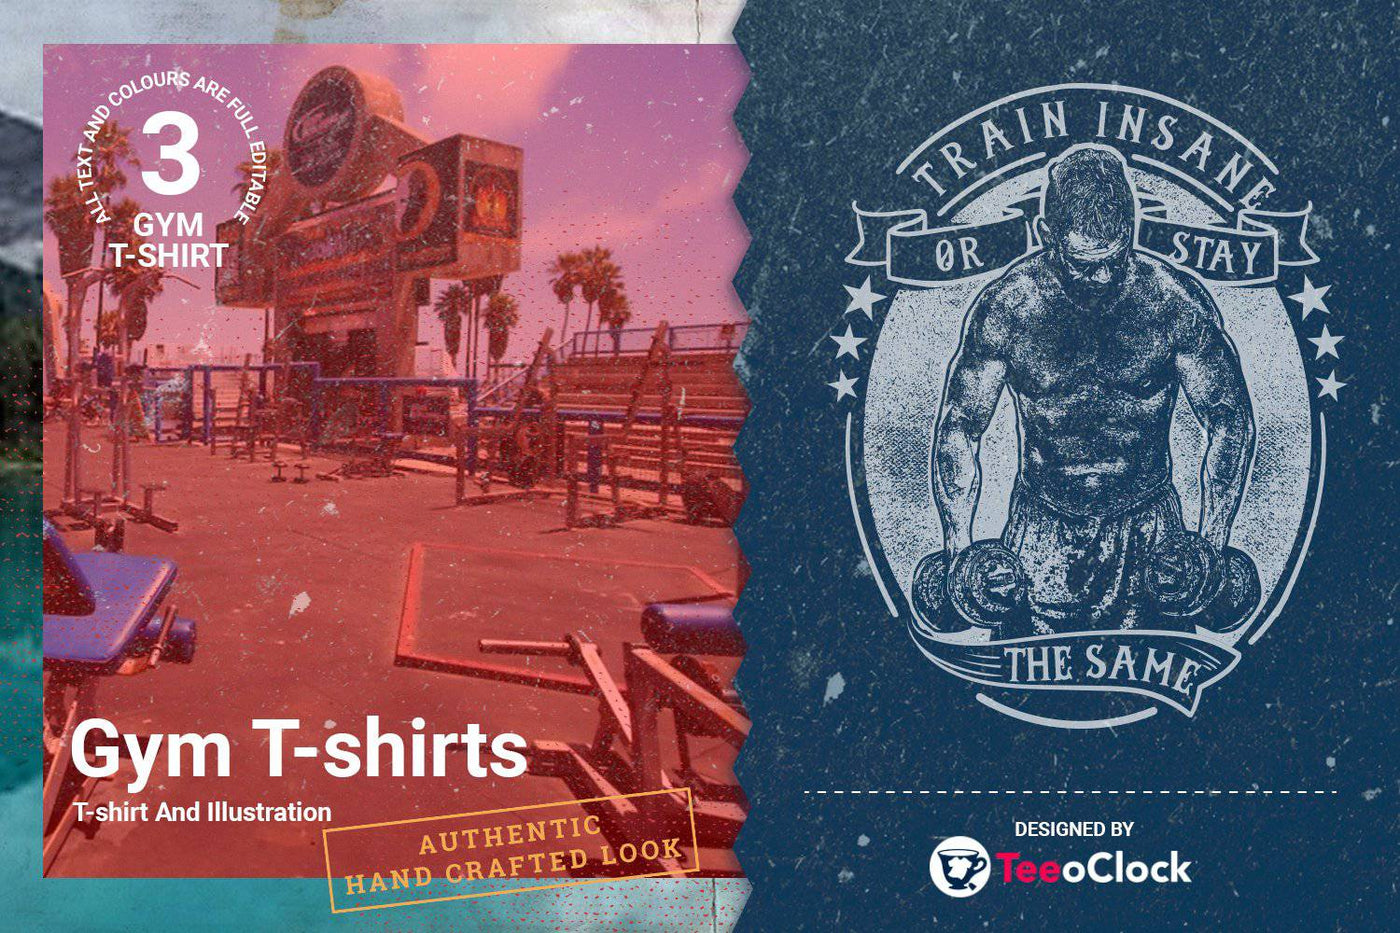 100 Editable T-Shirt Designs Bundle - Artixty